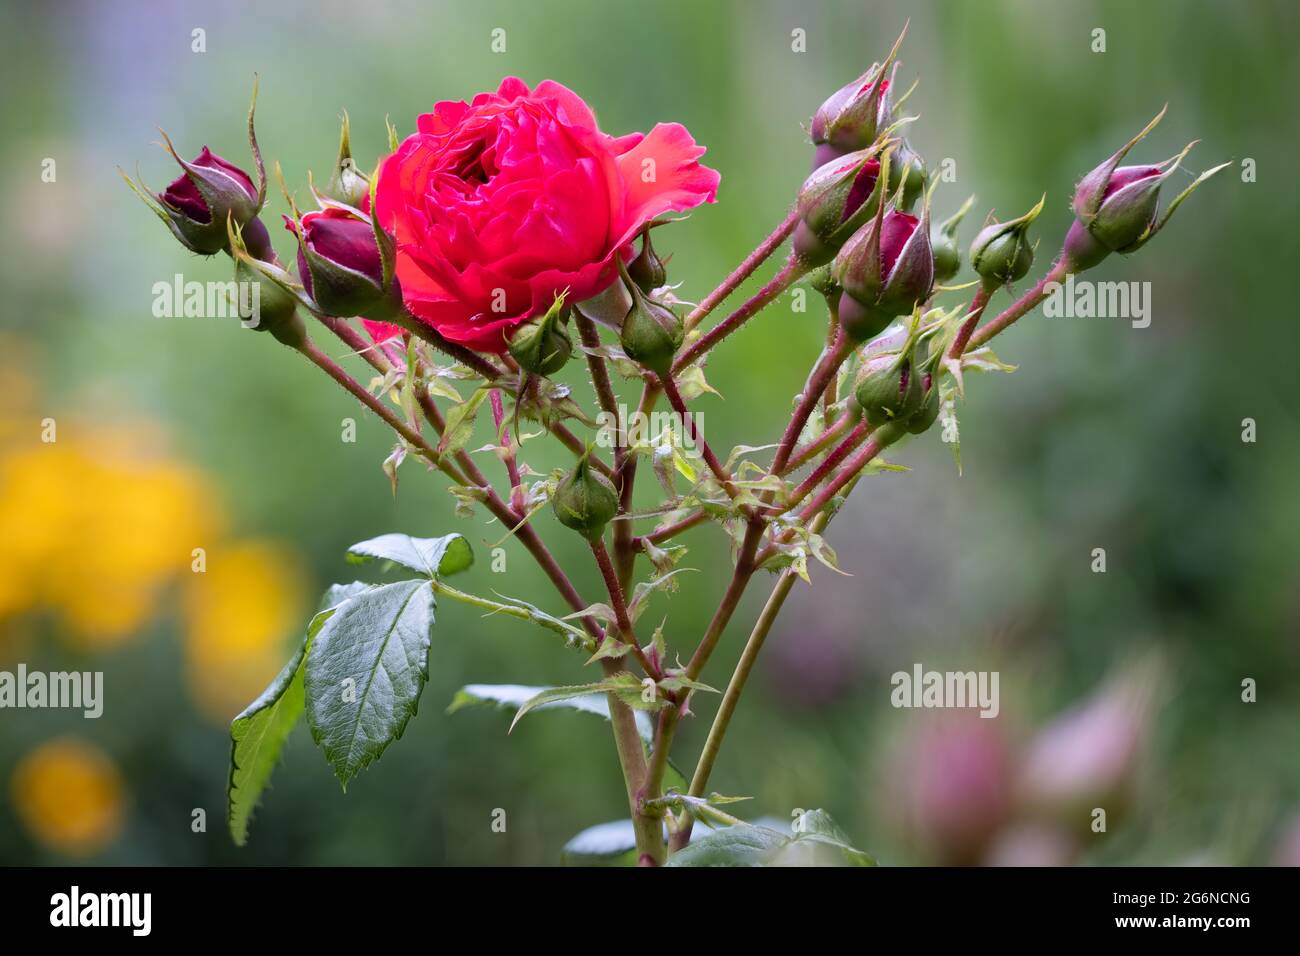 Fokus Stapel Detail der roten Rosenblume mit verschwommenem Hintergrund Stockfoto